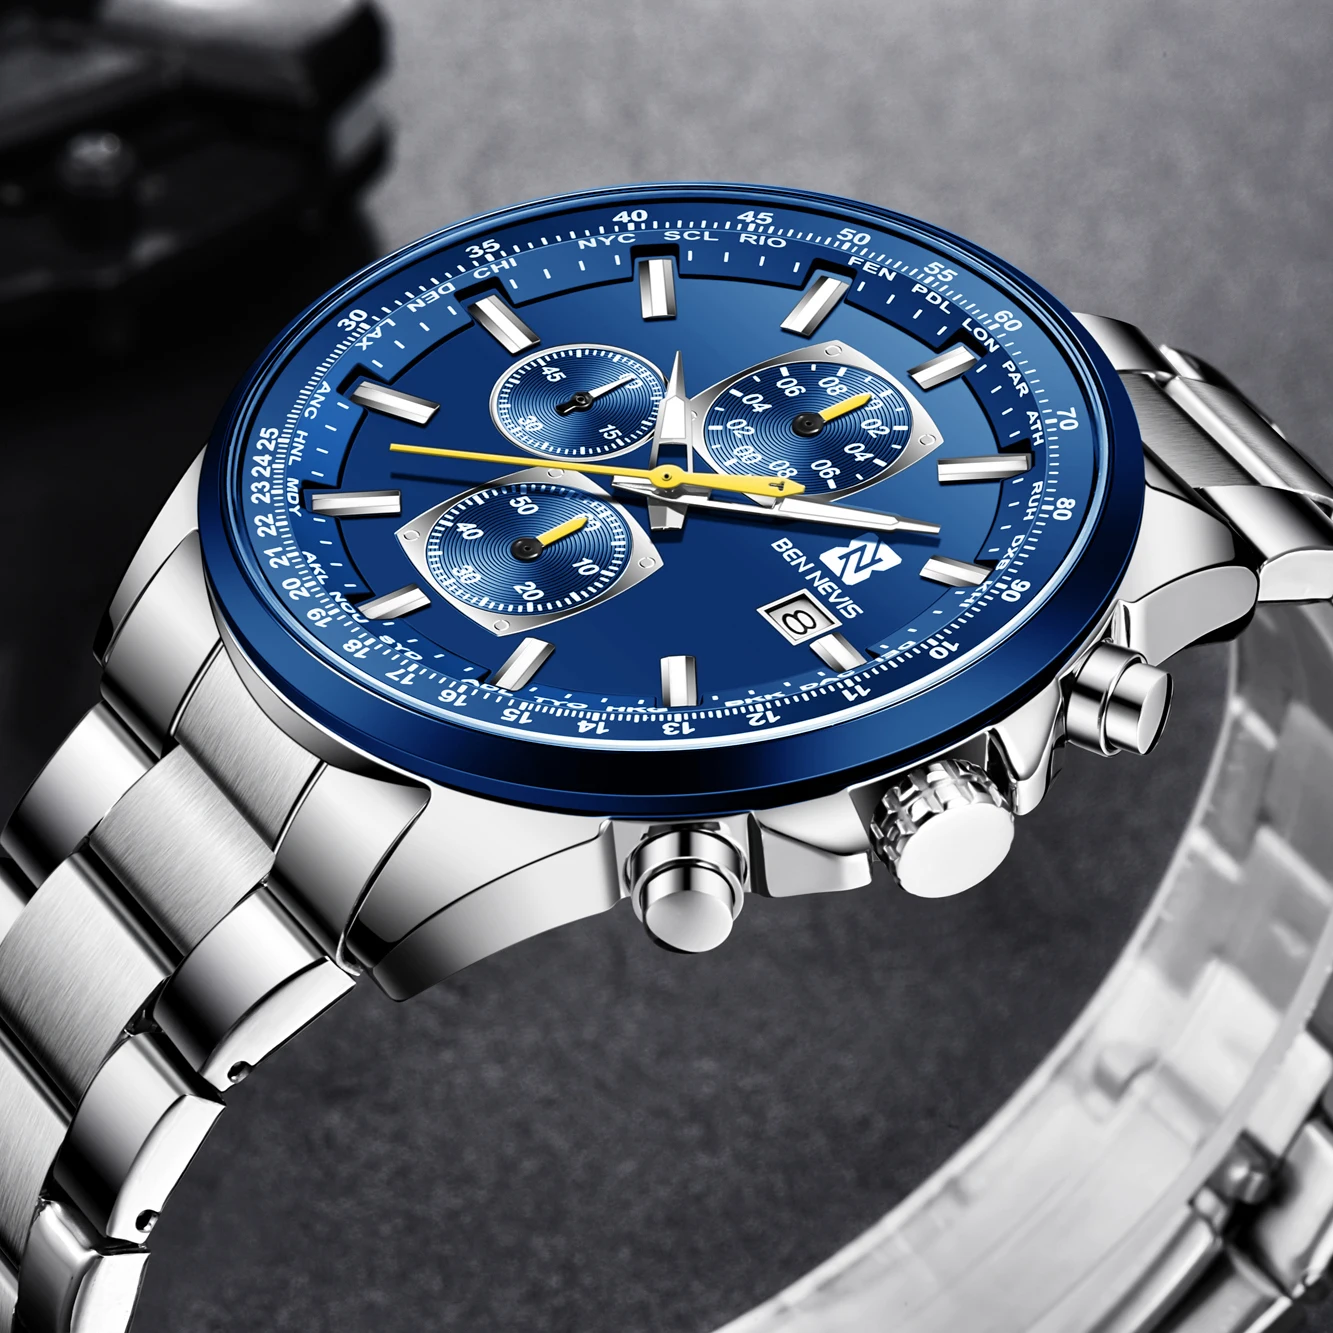 Мужские кварцевые наручные часы Бен-Нерис 2020 модные синие Серебристый браслет из